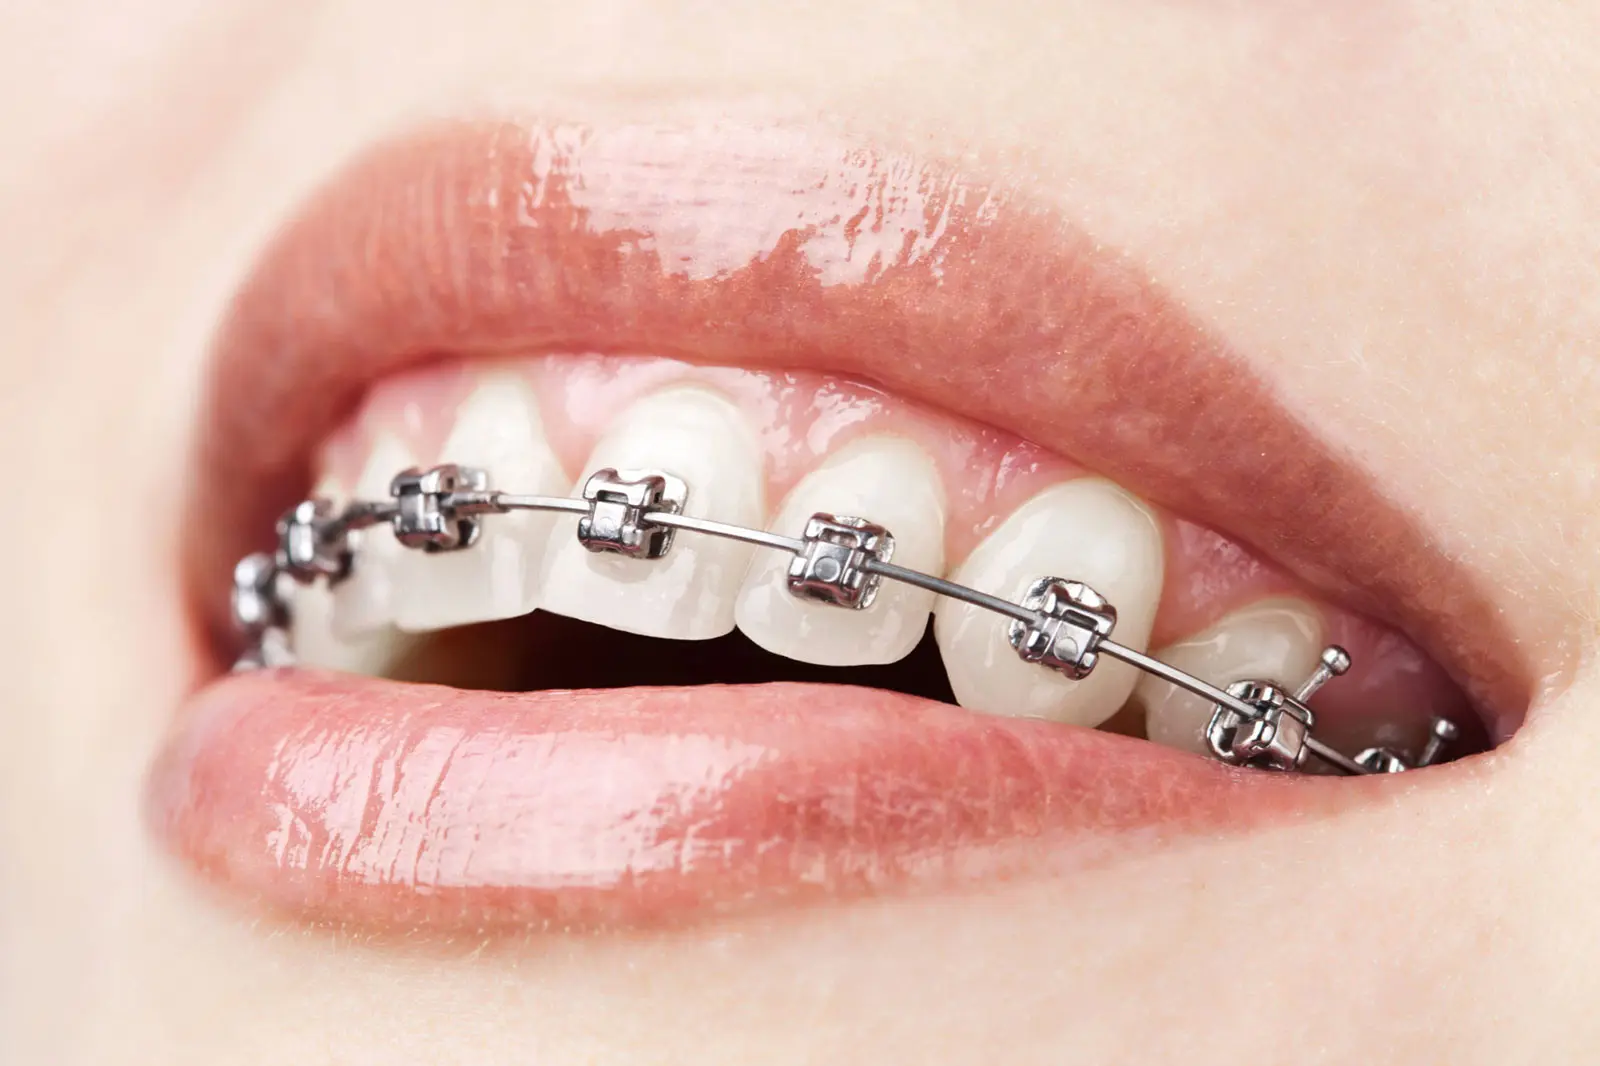 especialidad de ortodoncia en argentina - Cuántos años dura la especialidad de Ortodoncia